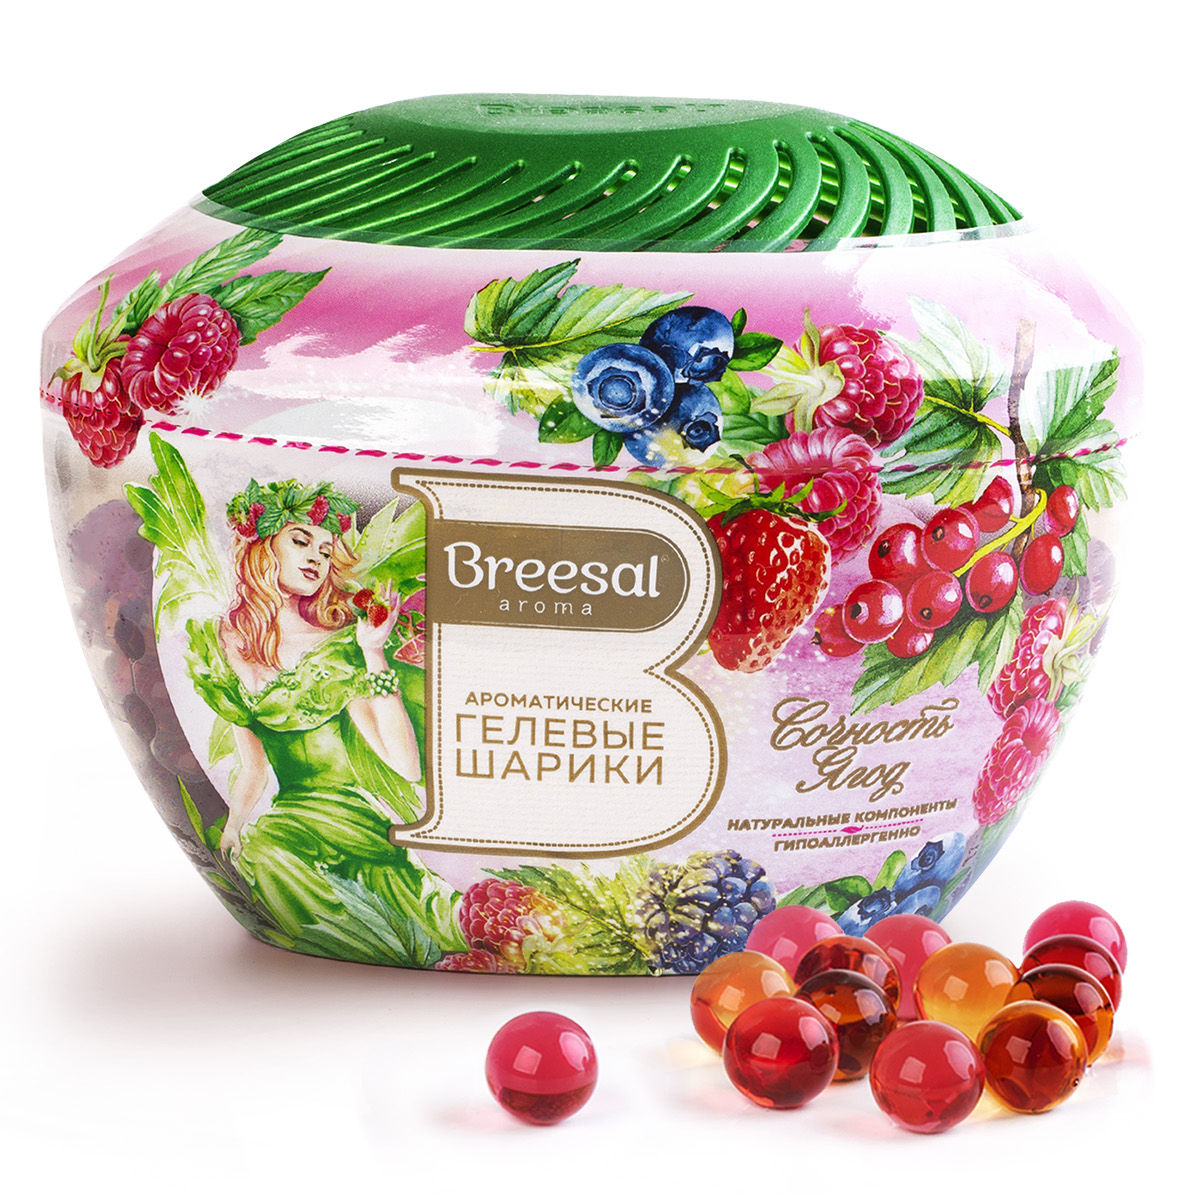 Ароматические гелевые шарики Breesal Fresh Drops Сочность ягод, 215 мл